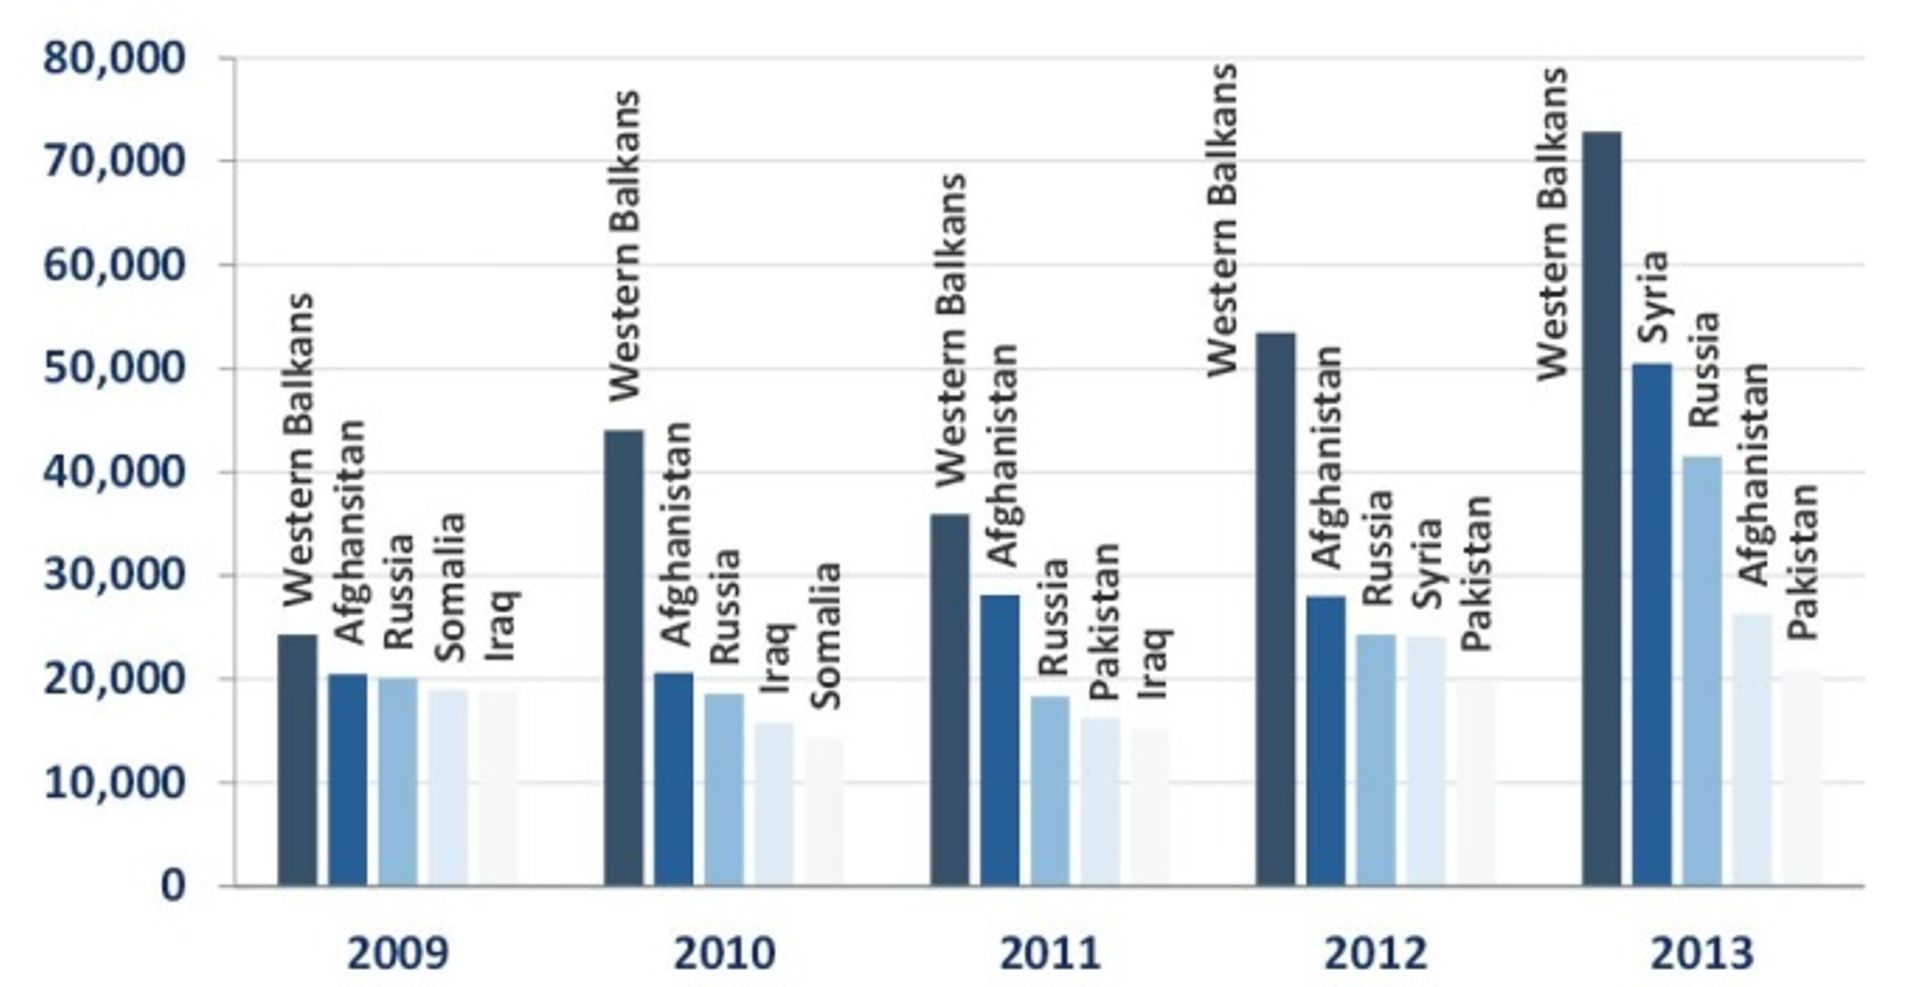 Les principaux pays d'origine des demandeurs d'asile dans l'Union européenne entre 2009 et 2013